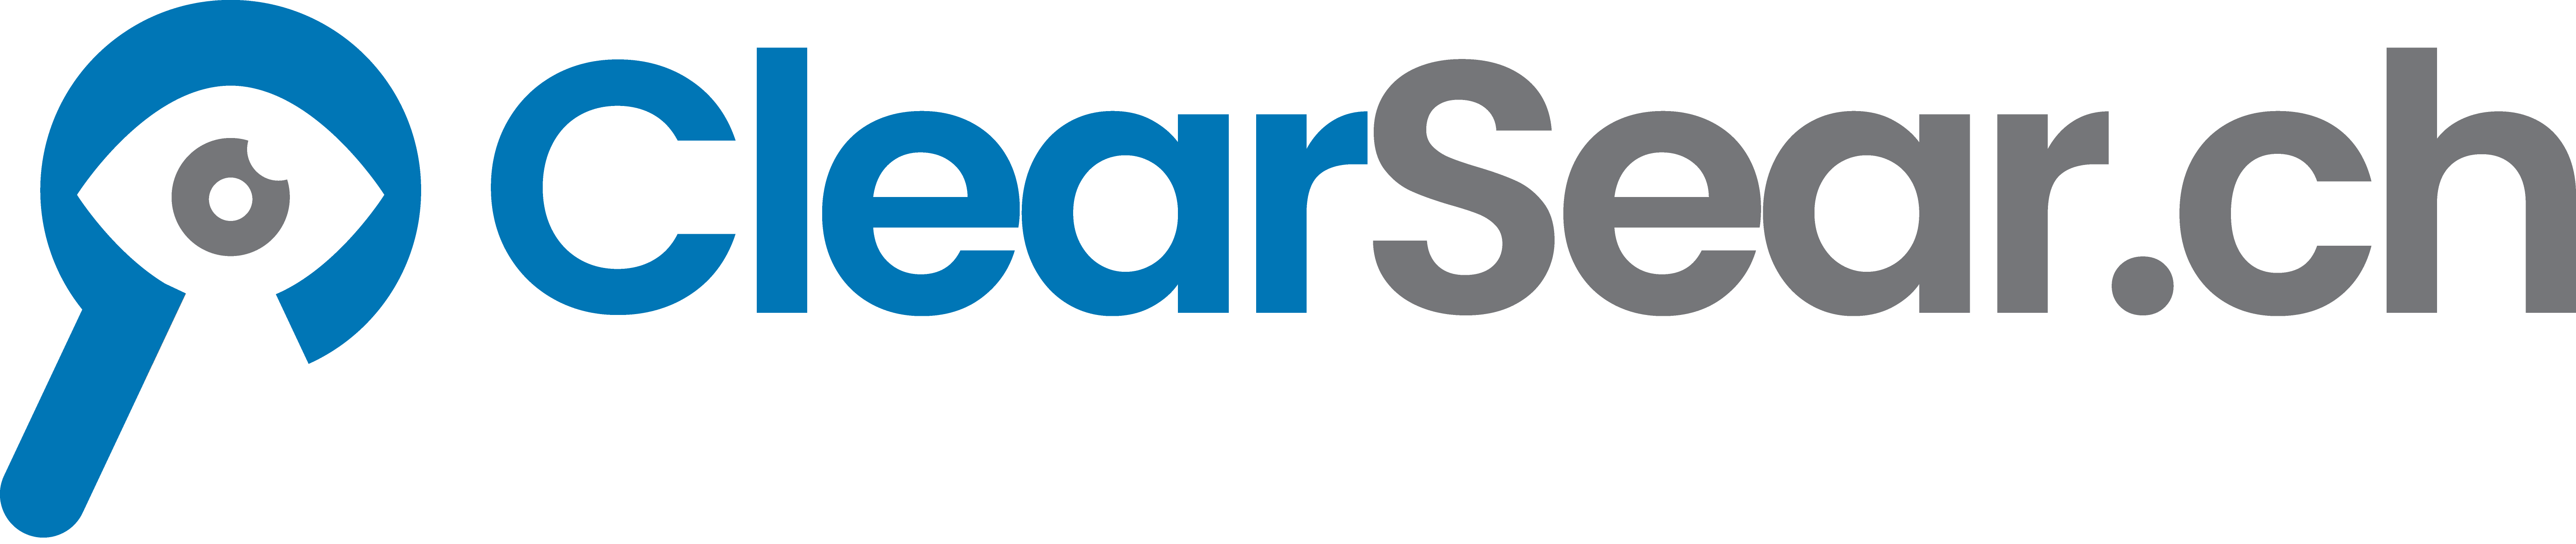 ClearSear.ch Logo